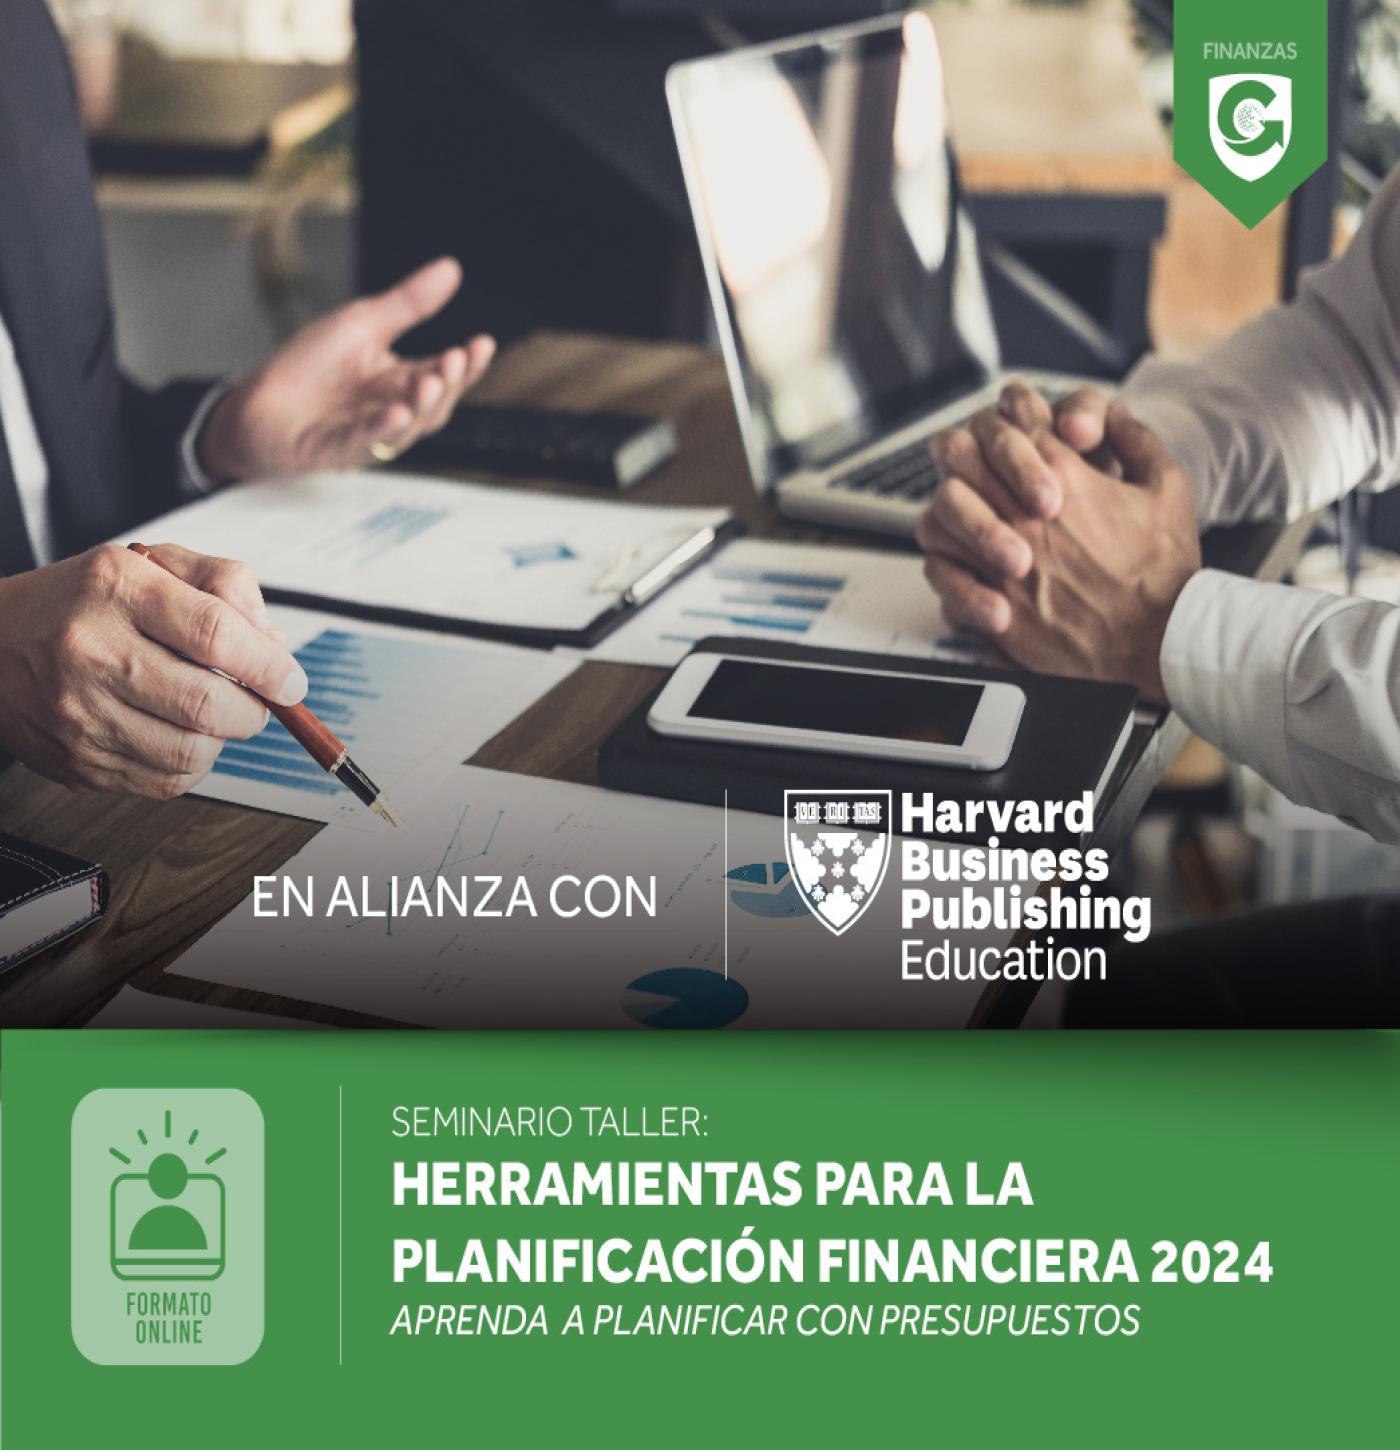 HERRAMIENTAS PARA LA PLANIFICACIÓN FINANCIERA 2024